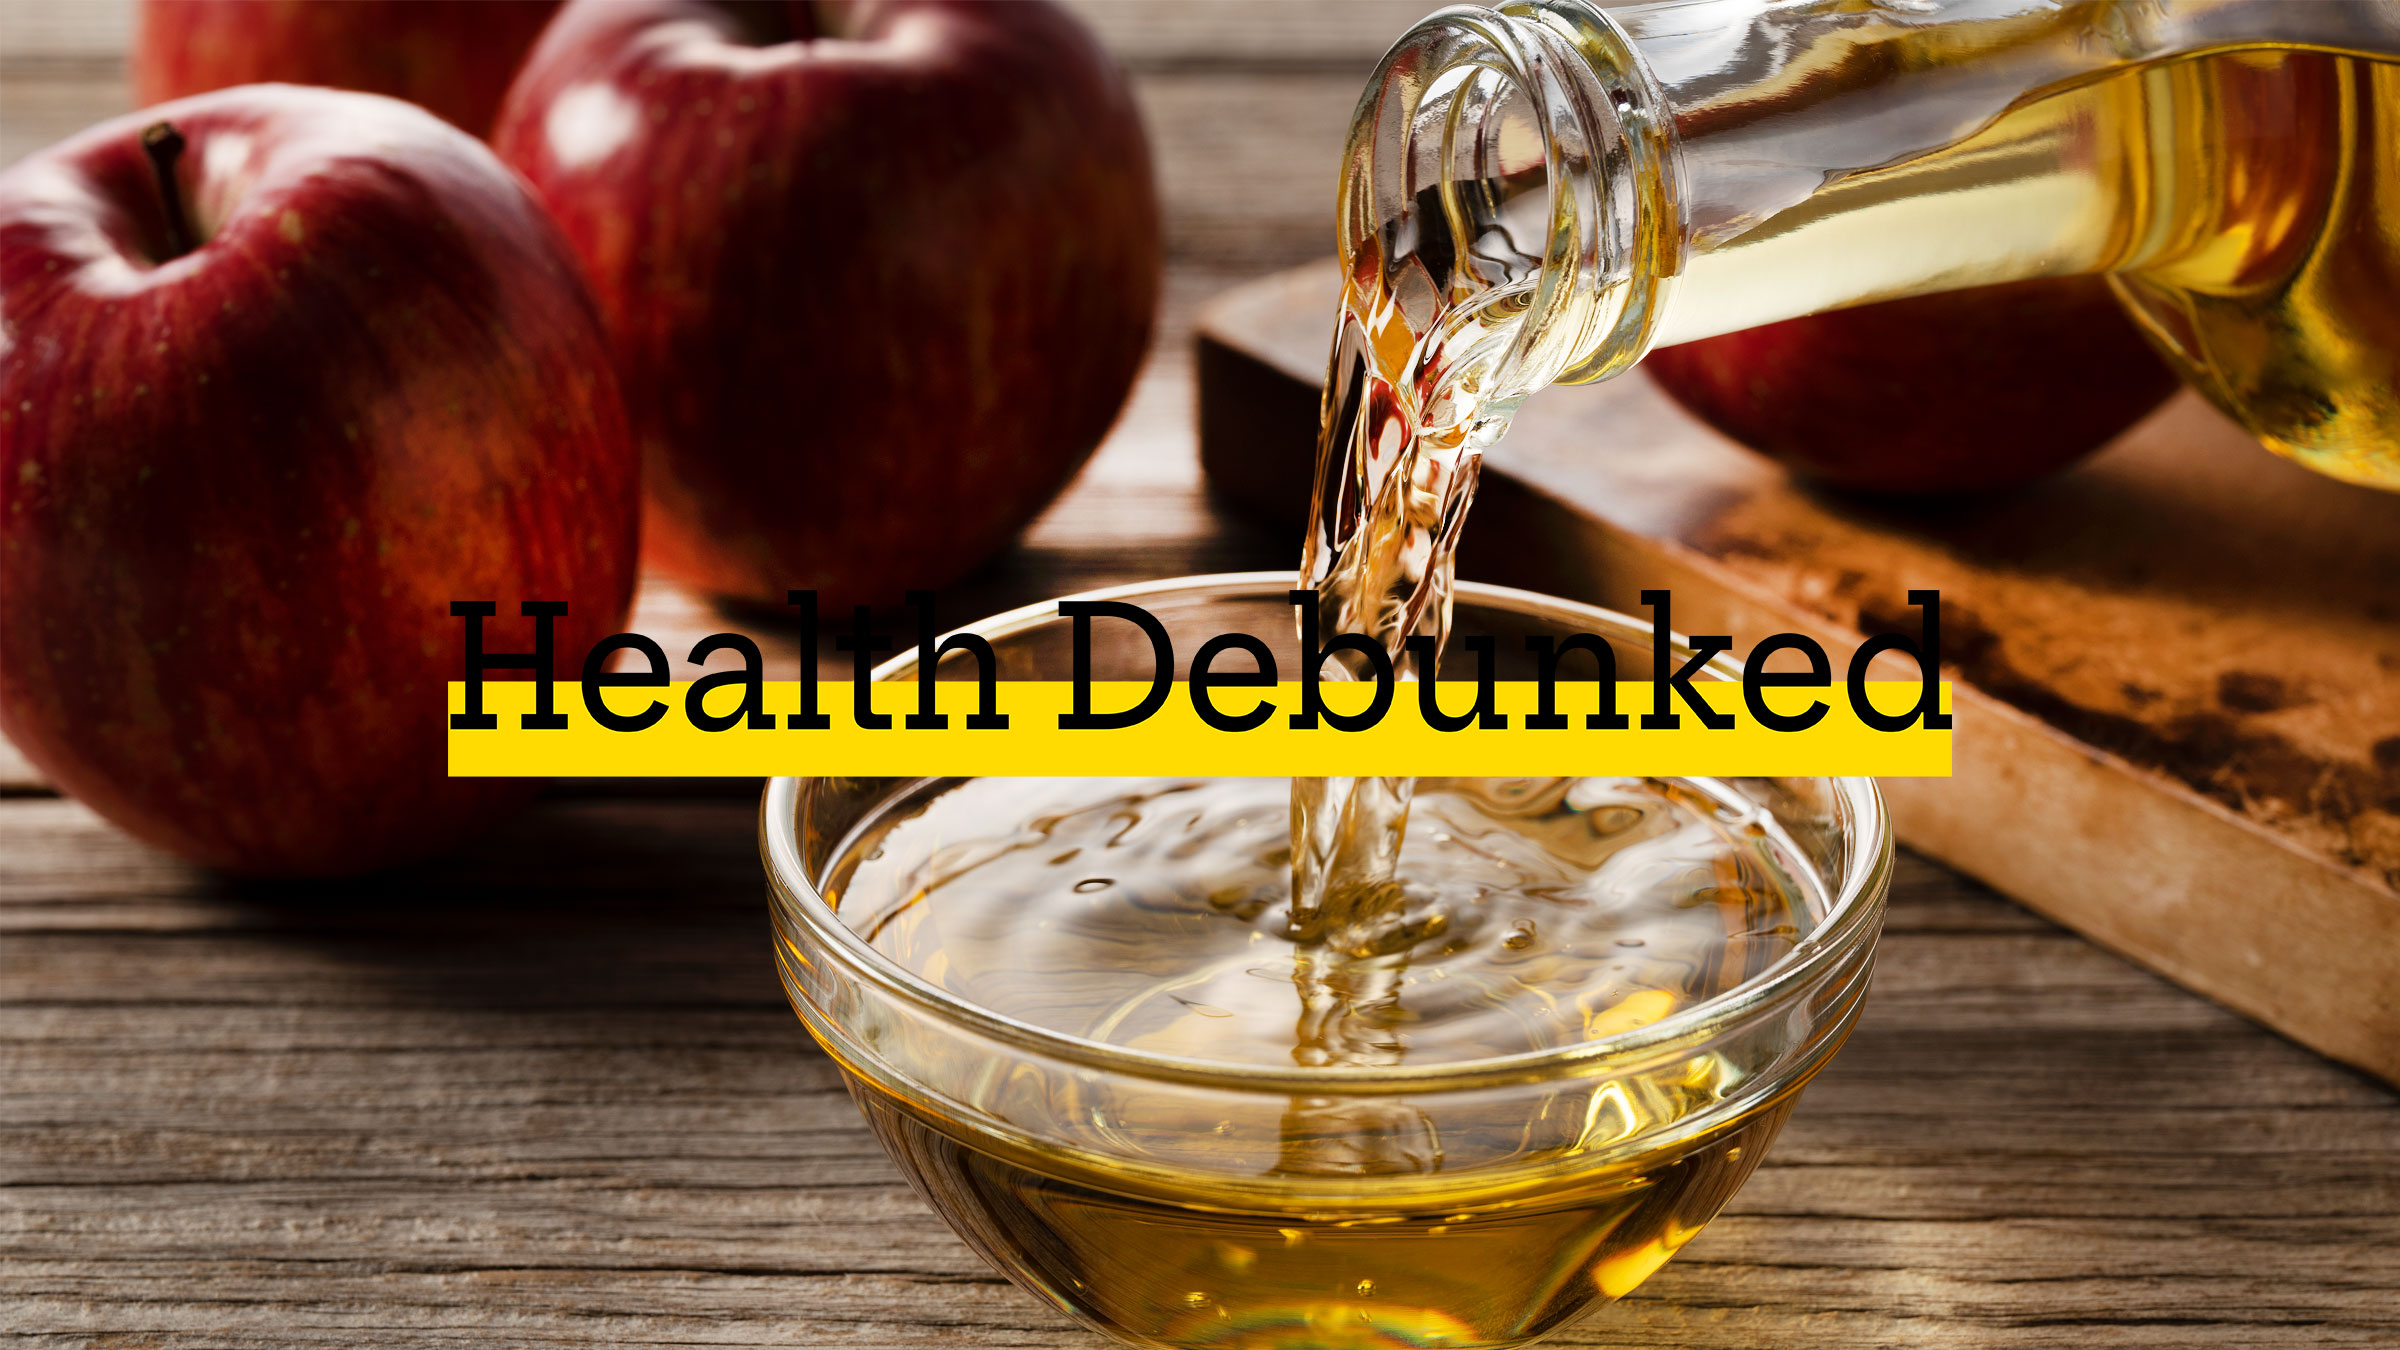 Debunked Apple Cider Vinegar 1358369263 